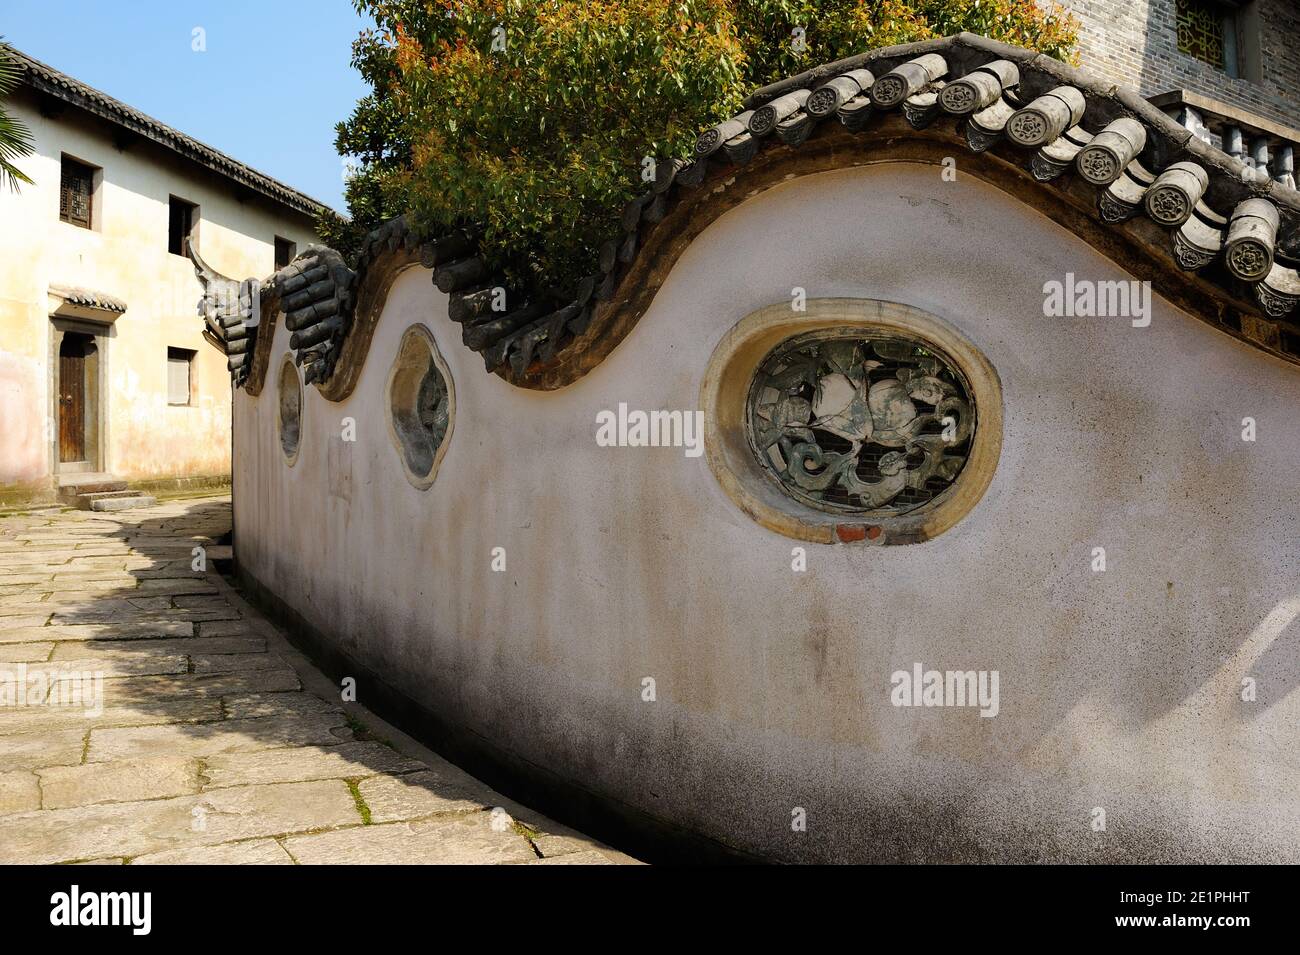 Ancienne rue avec un mur incurvé de style classique dans un vieux village pittoresque, typique de la Chine. Banque D'Images